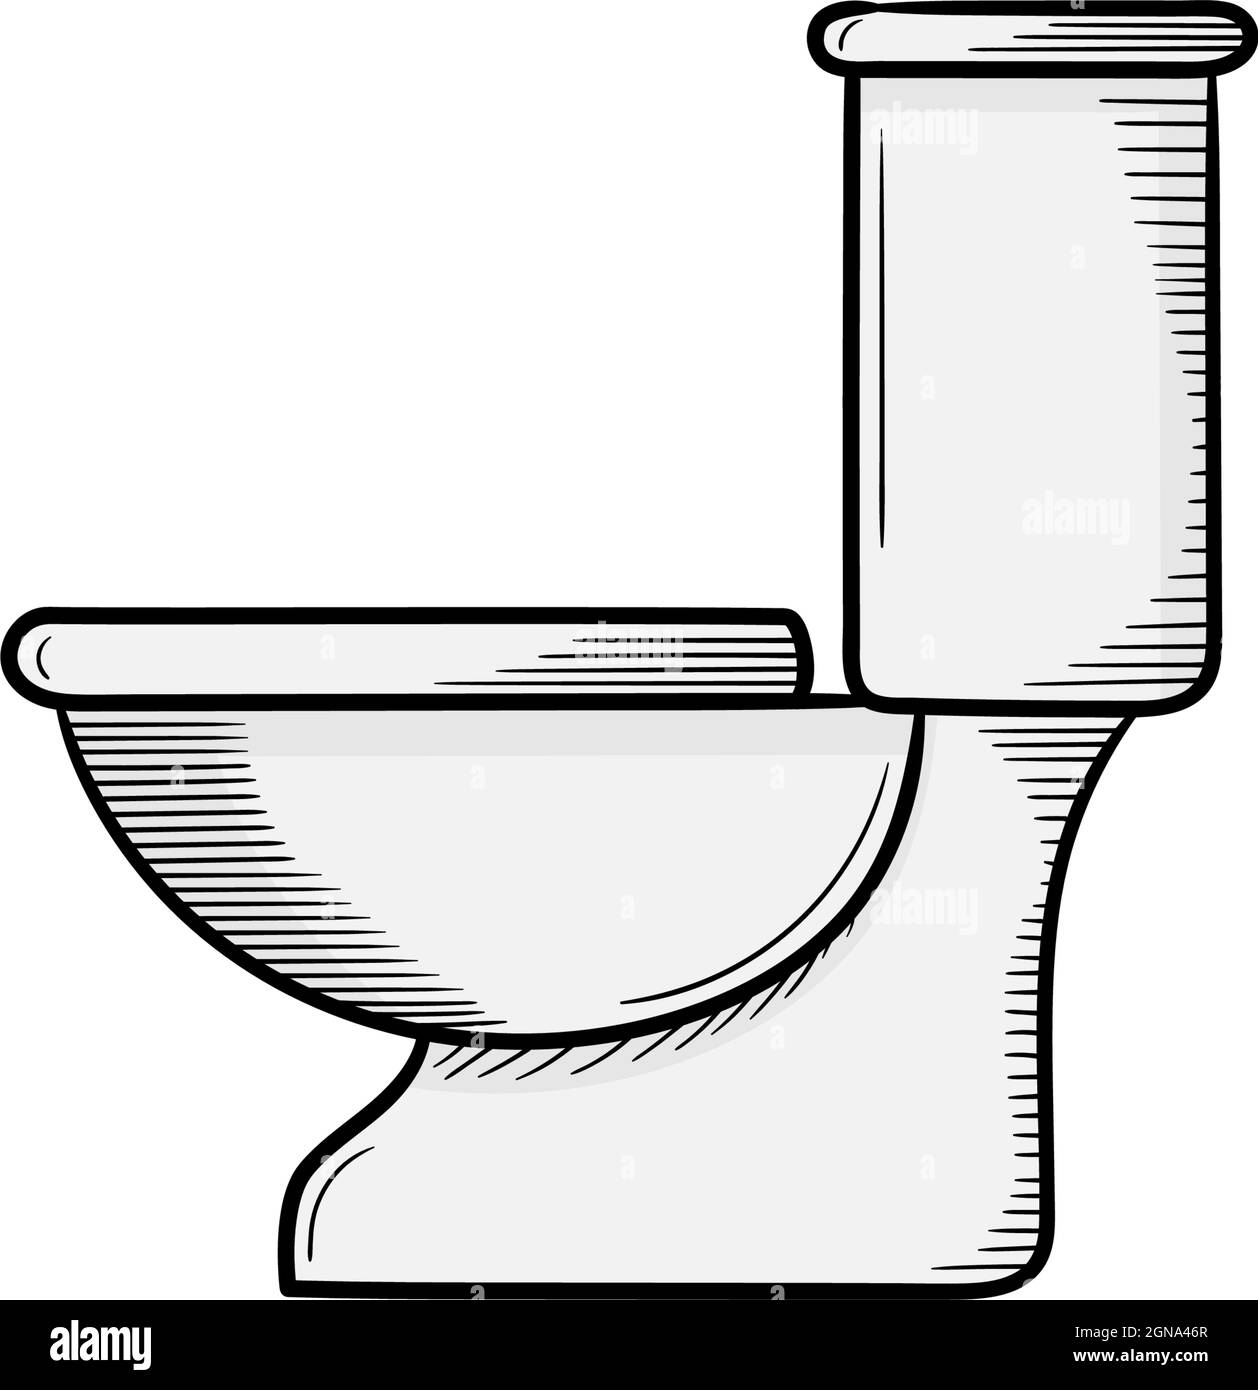 Handgezeichnete Design-Vorlage für das Symbol für die Toilette Stock Vektor